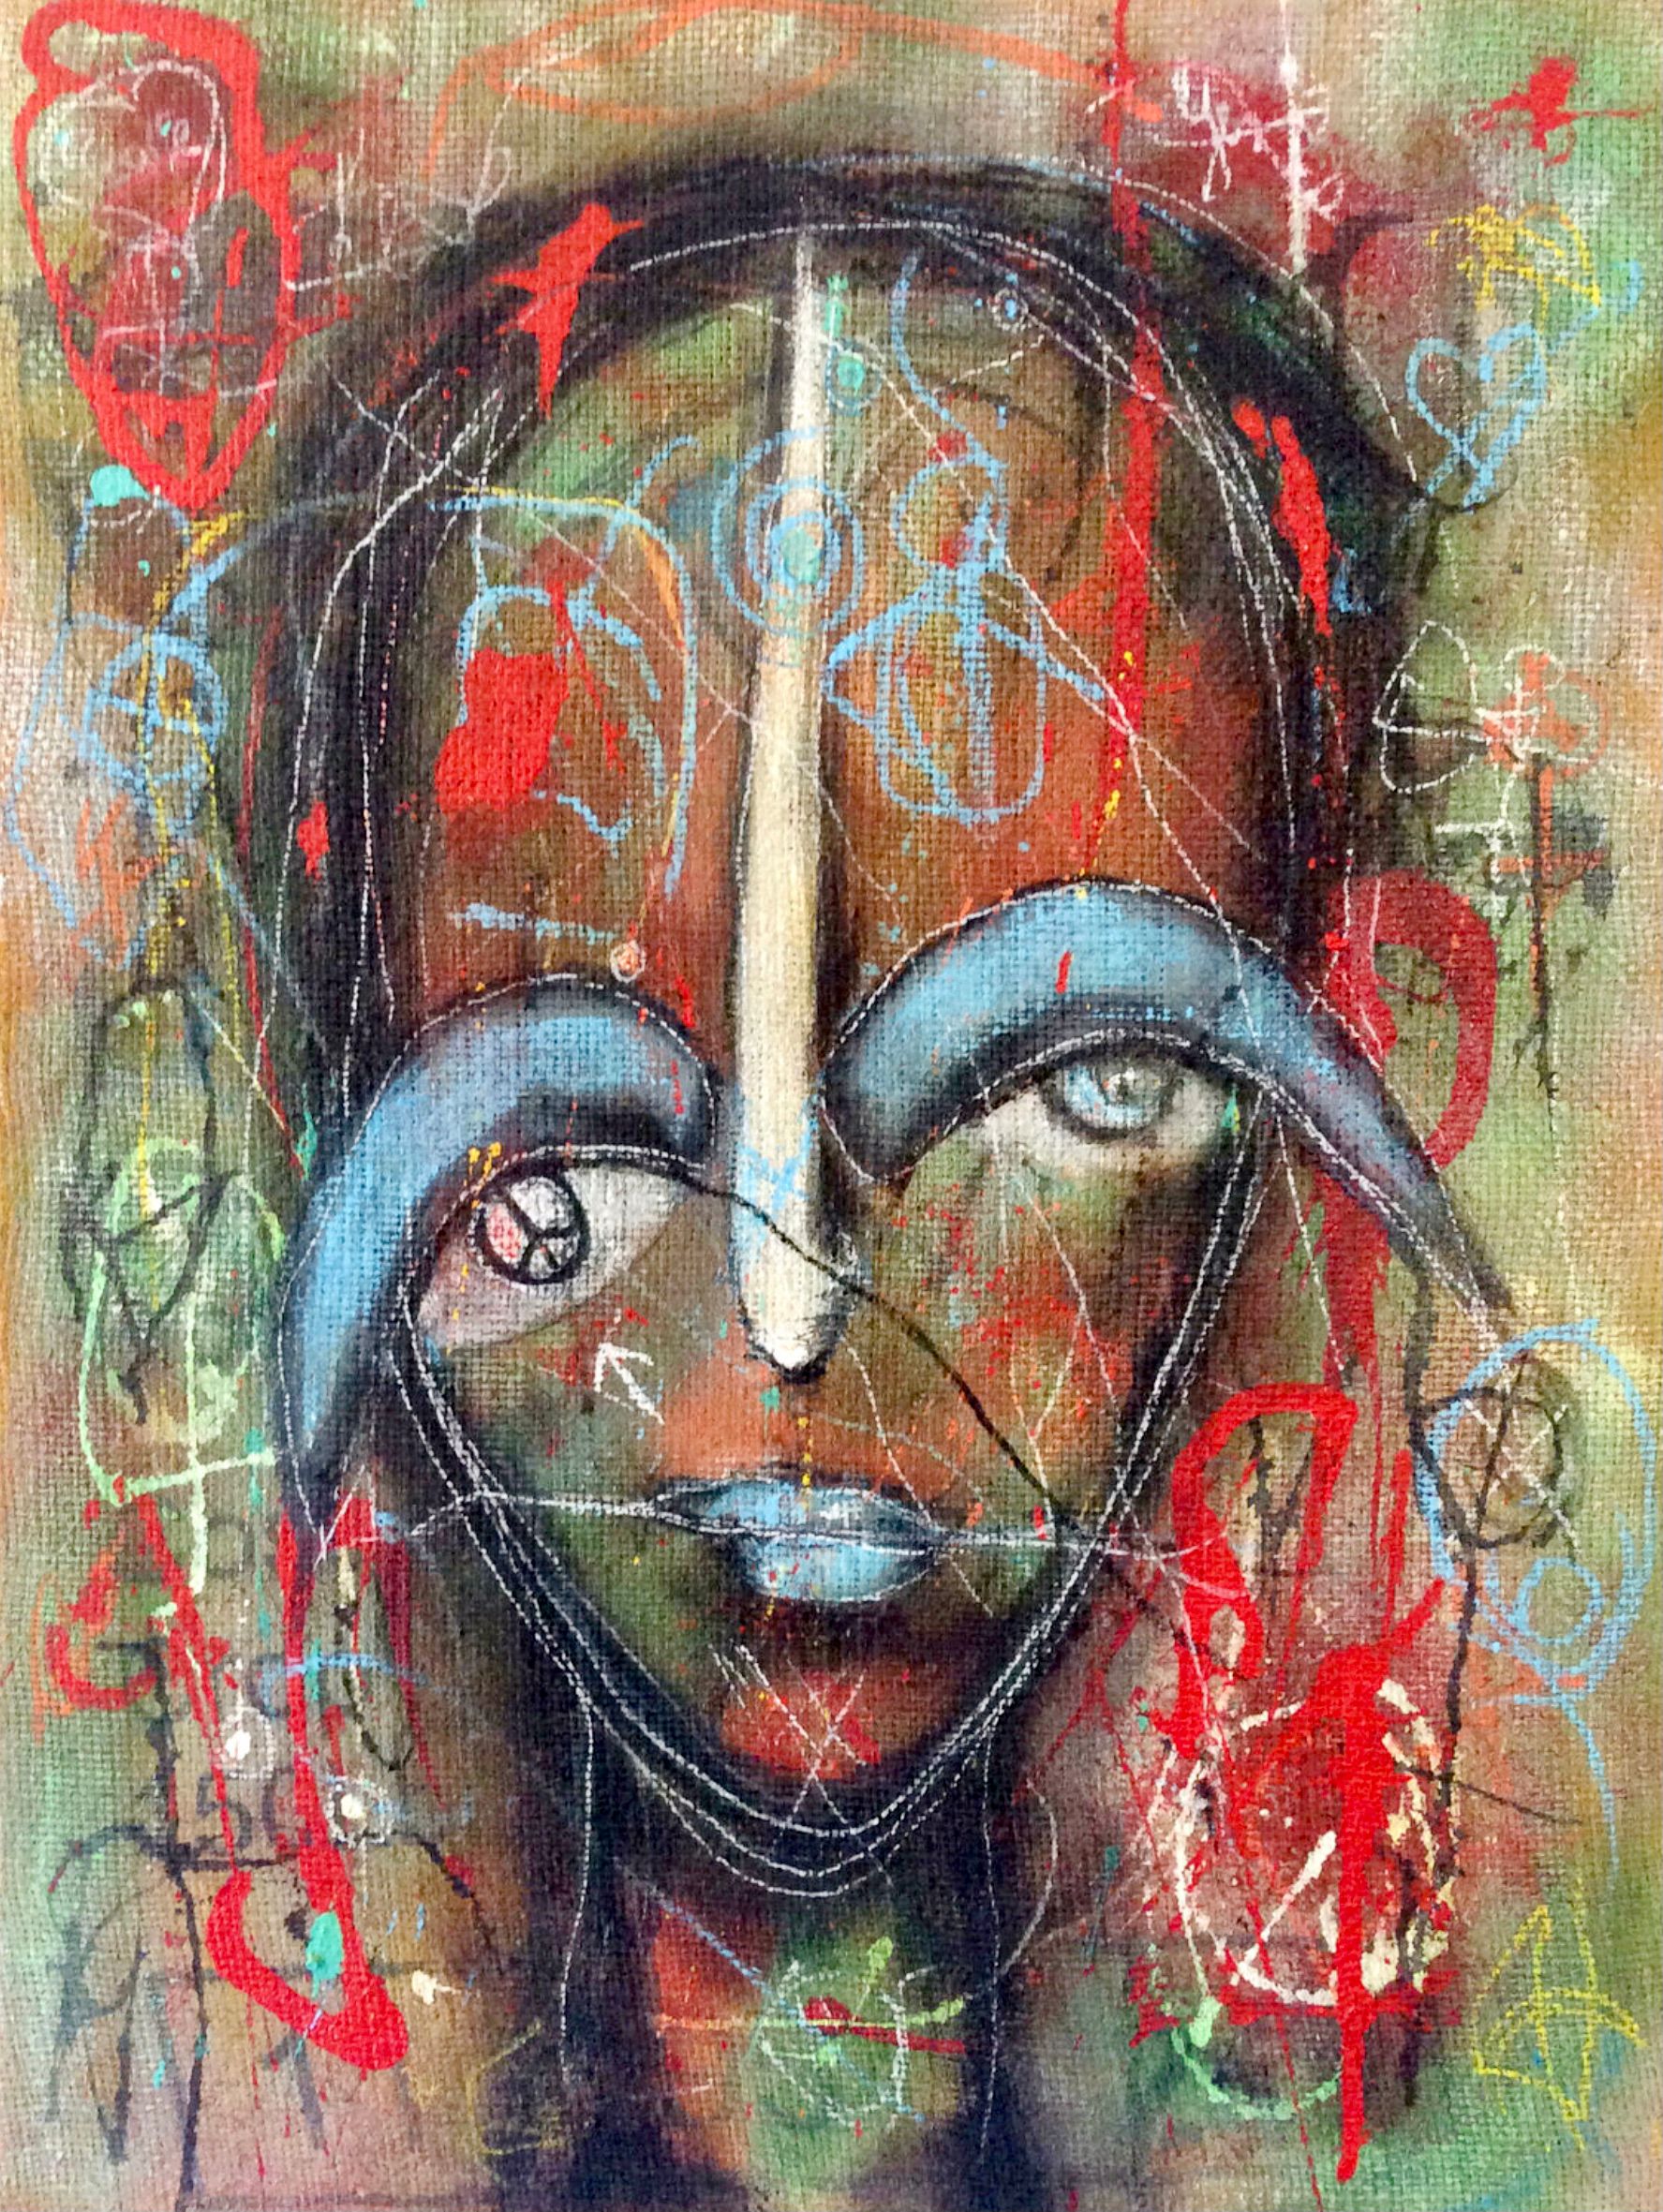 El expresivo retrato semiabstracto "Buscando la paz", de Ilona Schmidt, muestra el rostro de una mujer. Los colores rojo, naranja, turquesa, verde y azul dominan este cuadro.